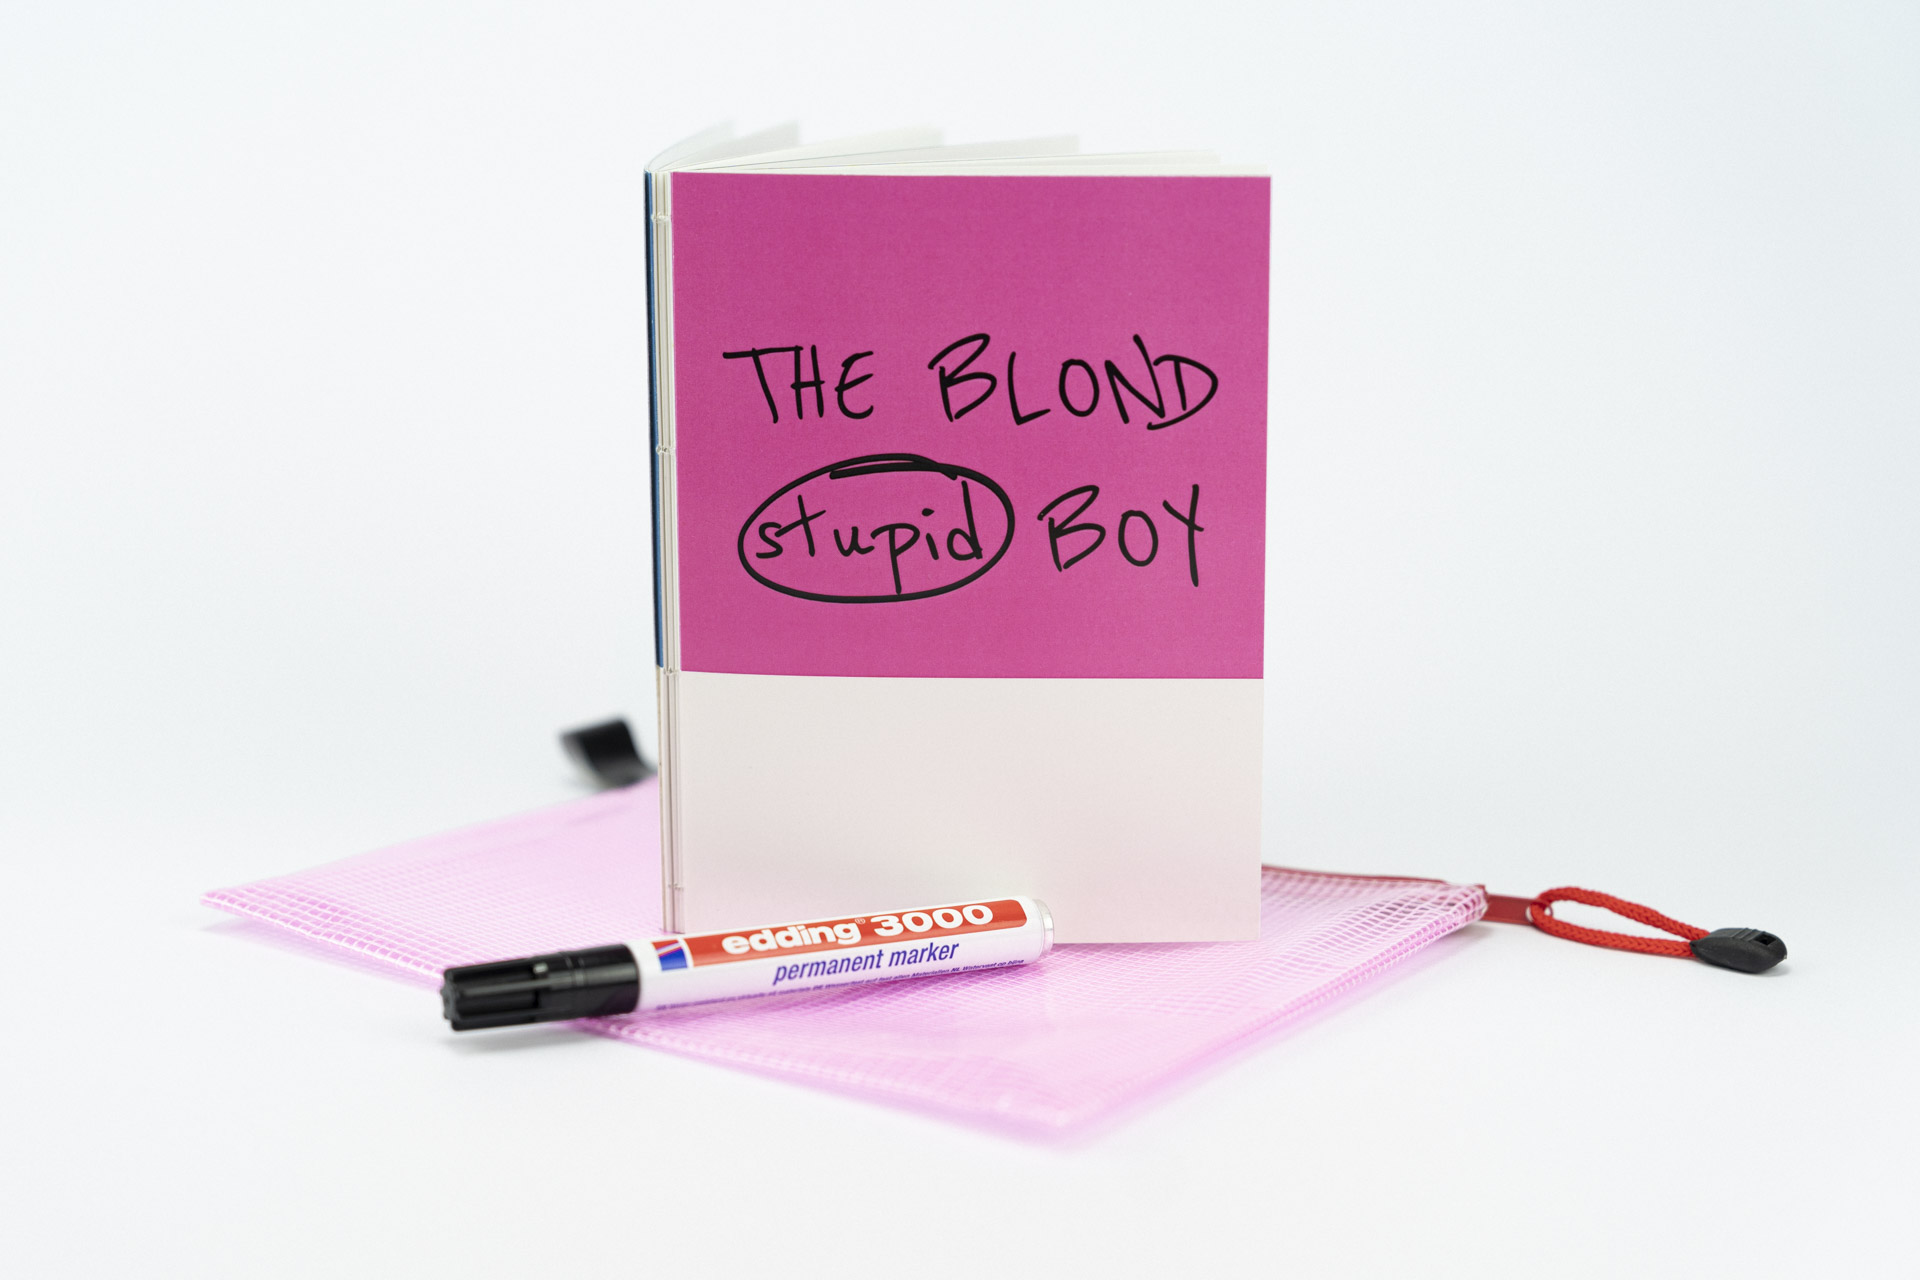 Nahaufnahme eines aufgestellten Fotobuchs mit dem Titel The Blond Stupid Boy auf weißem Hintergrund mit einem Edding